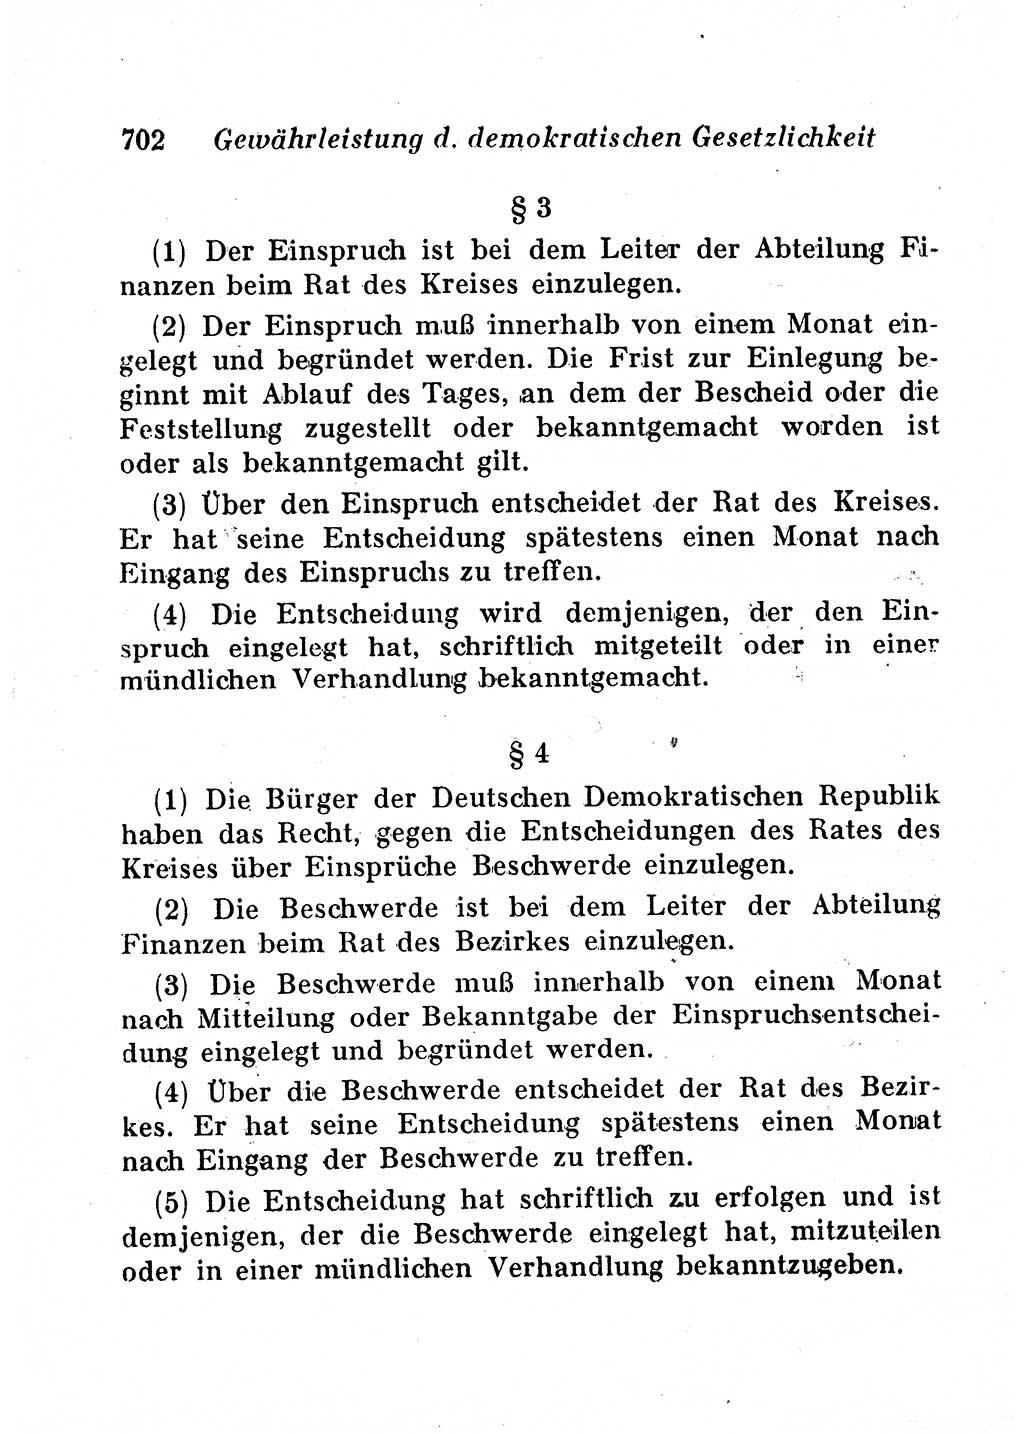 Staats- und verwaltungsrechtliche Gesetze der Deutschen Demokratischen Republik (DDR) 1958, Seite 702 (StVerwR Ges. DDR 1958, S. 702)